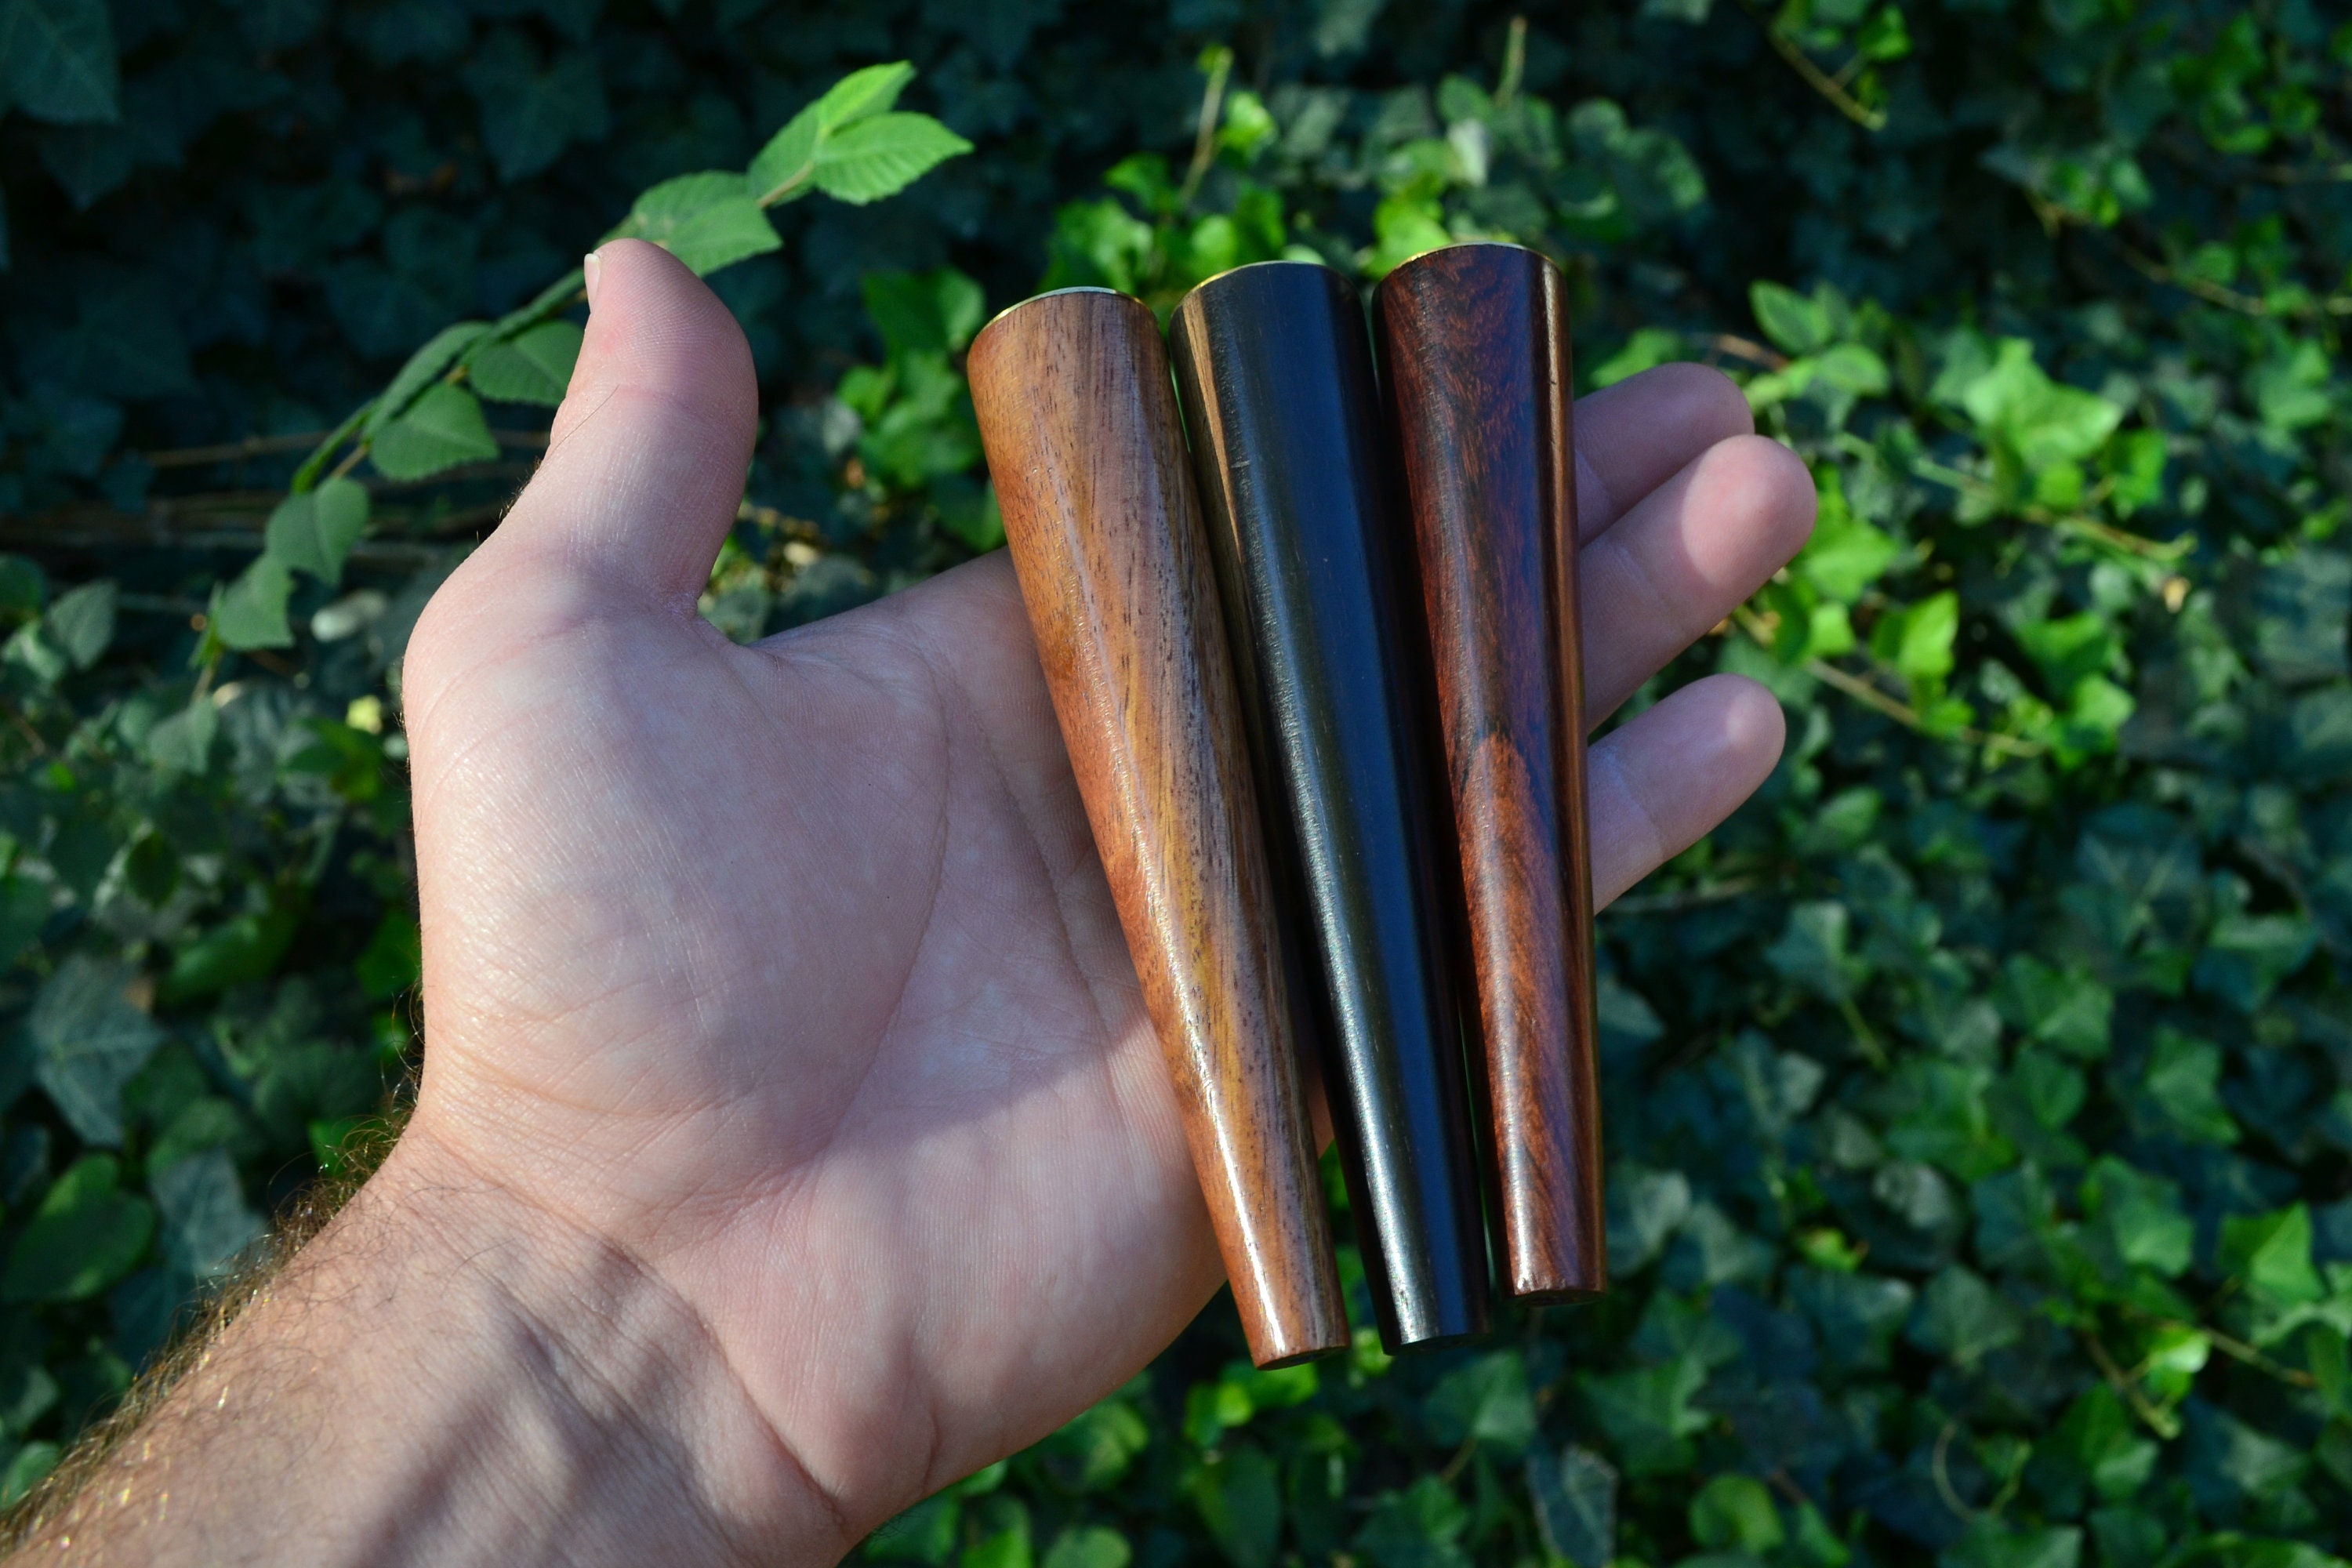 ·ξ Smoker Bent Type Ebonywooden Smoking Pipe With Metal And Wood